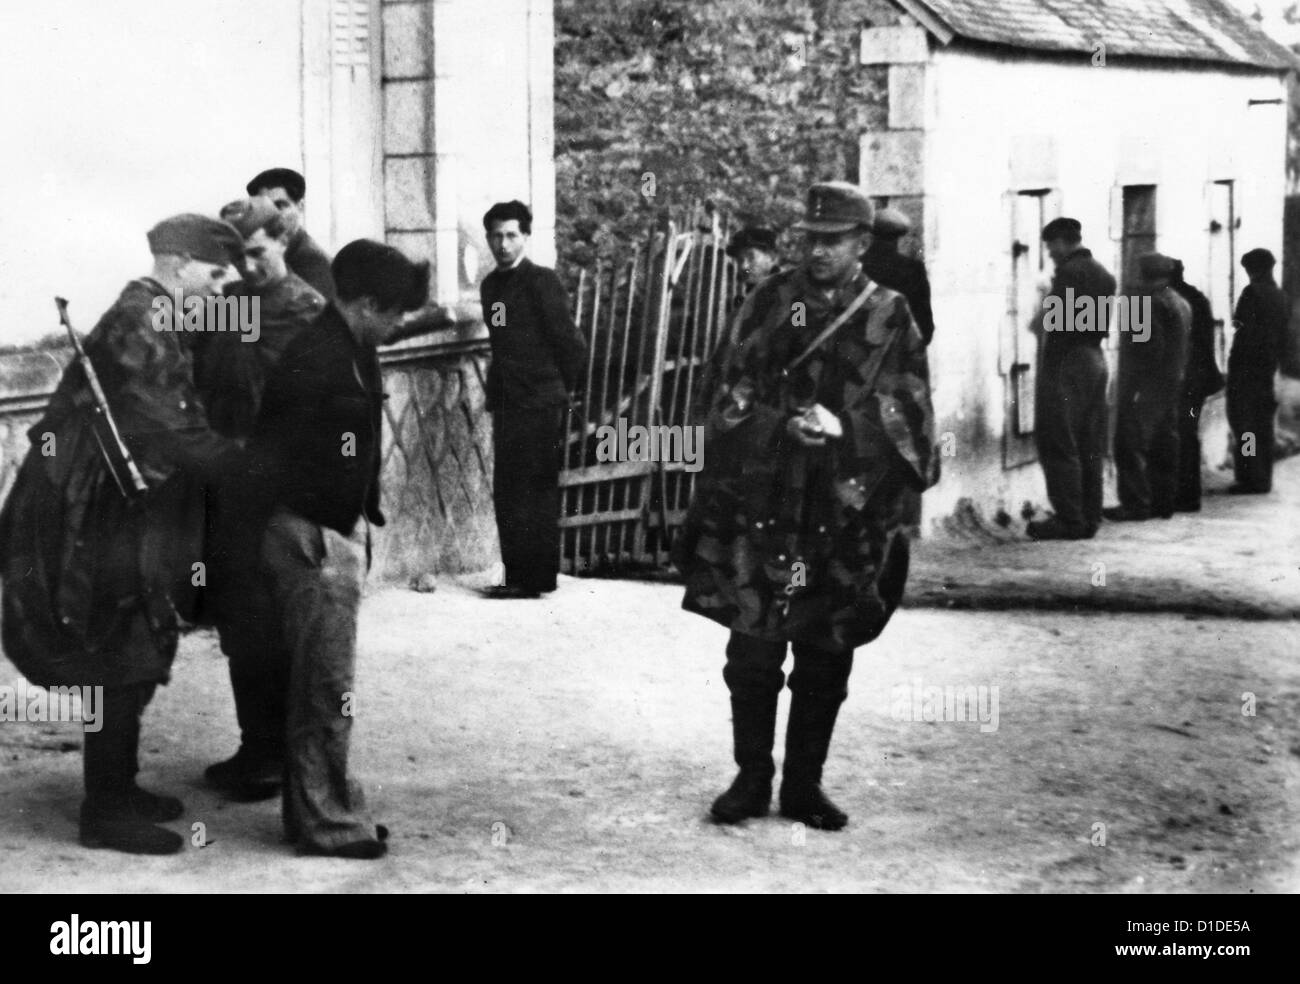 Soldiers of the German Wehrmacht arrest French partisans in a village in the French region Bretagne on 3 August 1944. Fotoarchiv für Zeitgeschichte Stock Photo